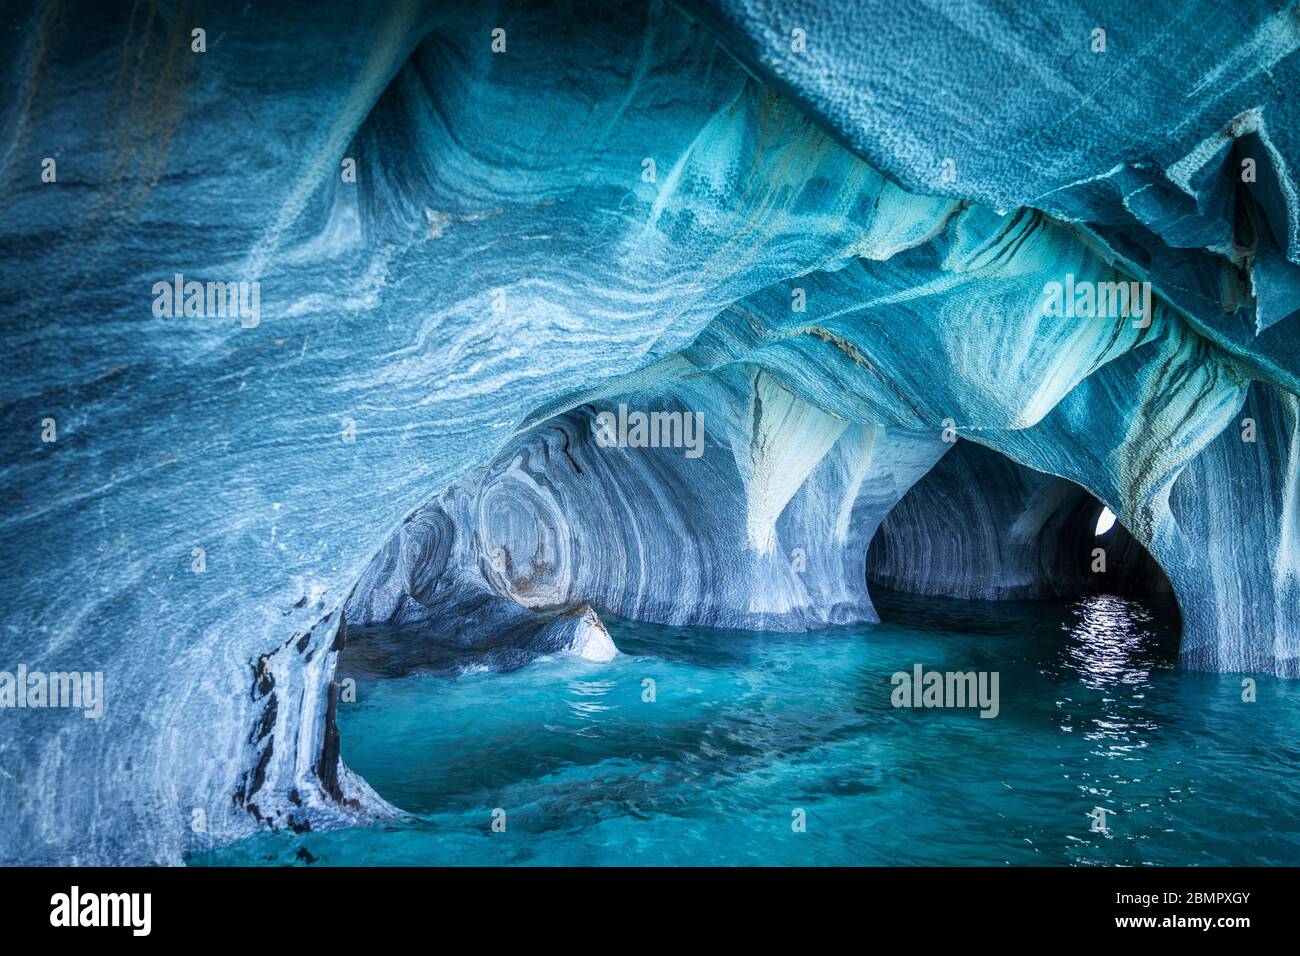 Cuevas de mármol (Cuevas de Marmol), una serie de cuevas esculpidas naturalmente en el Lago General Carrera en Chile, Patagonia, Sudamérica. Foto de stock